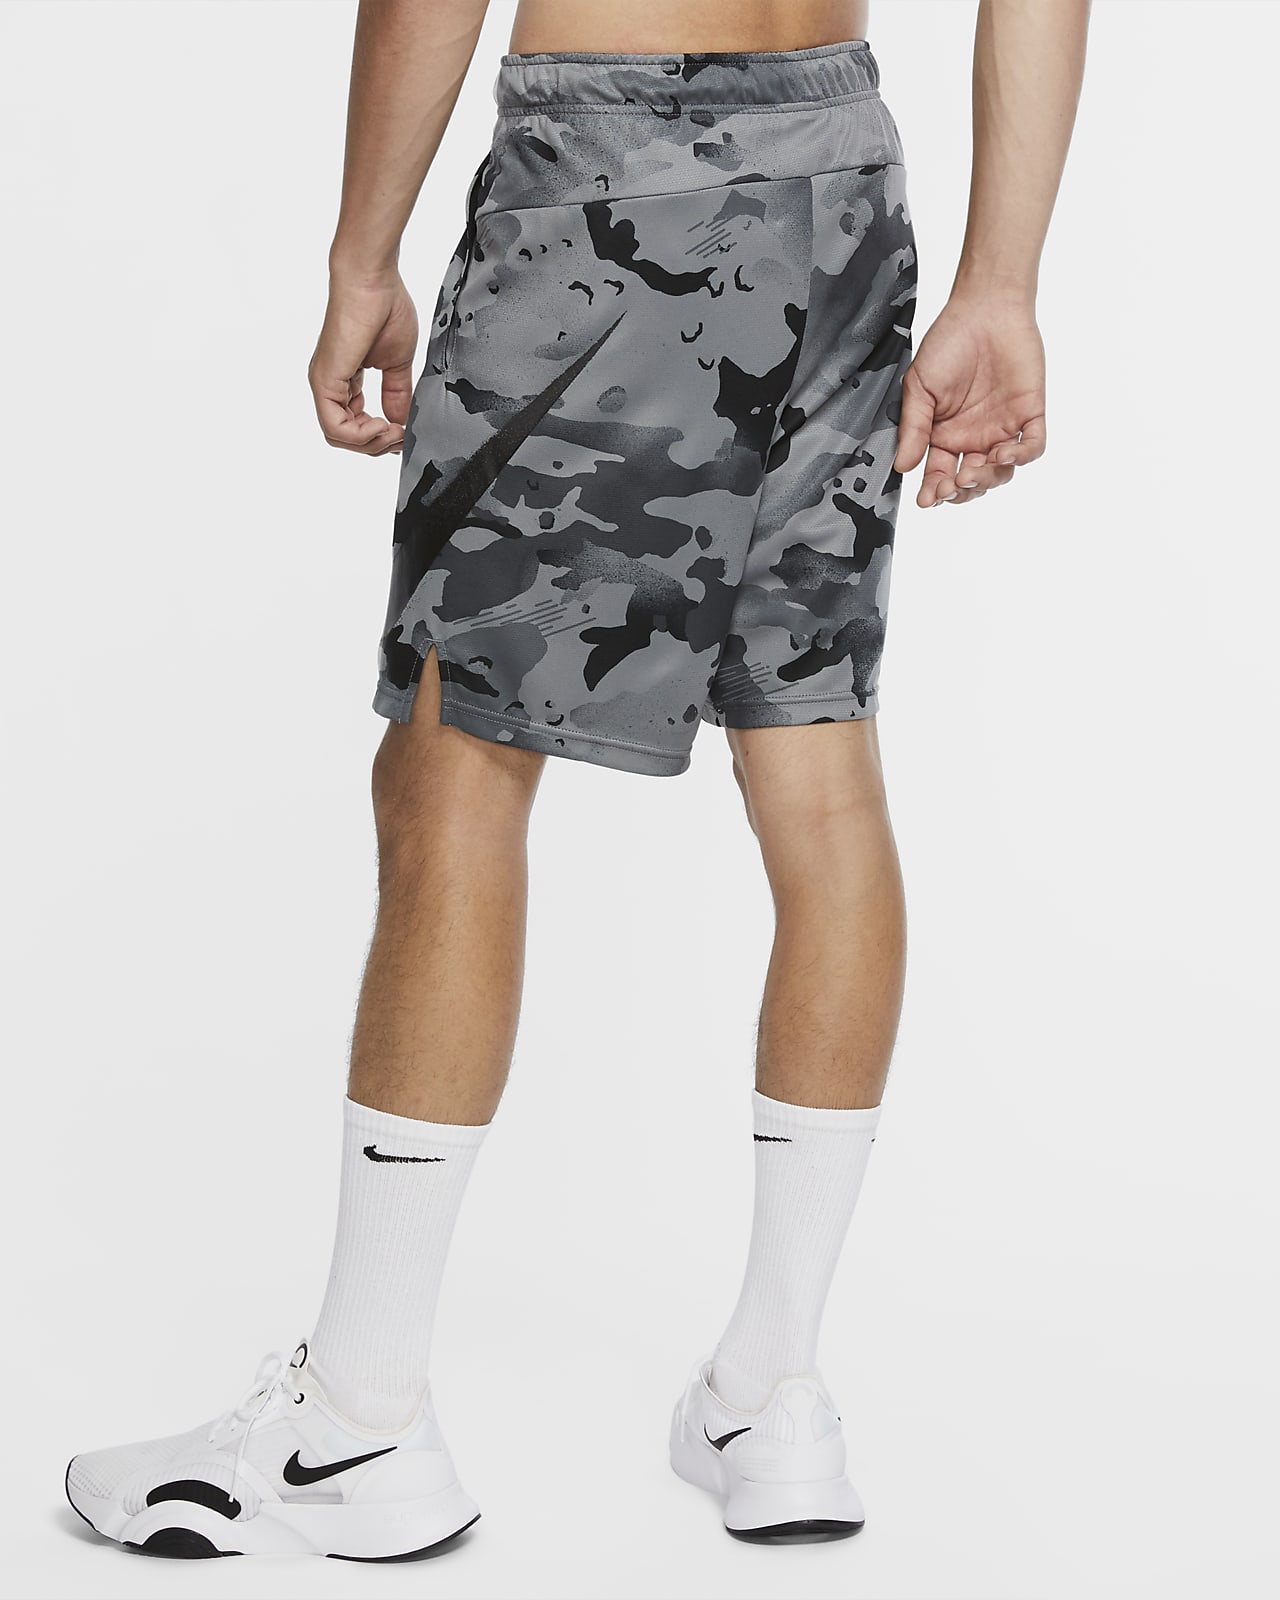 men's nike camouflage shorts